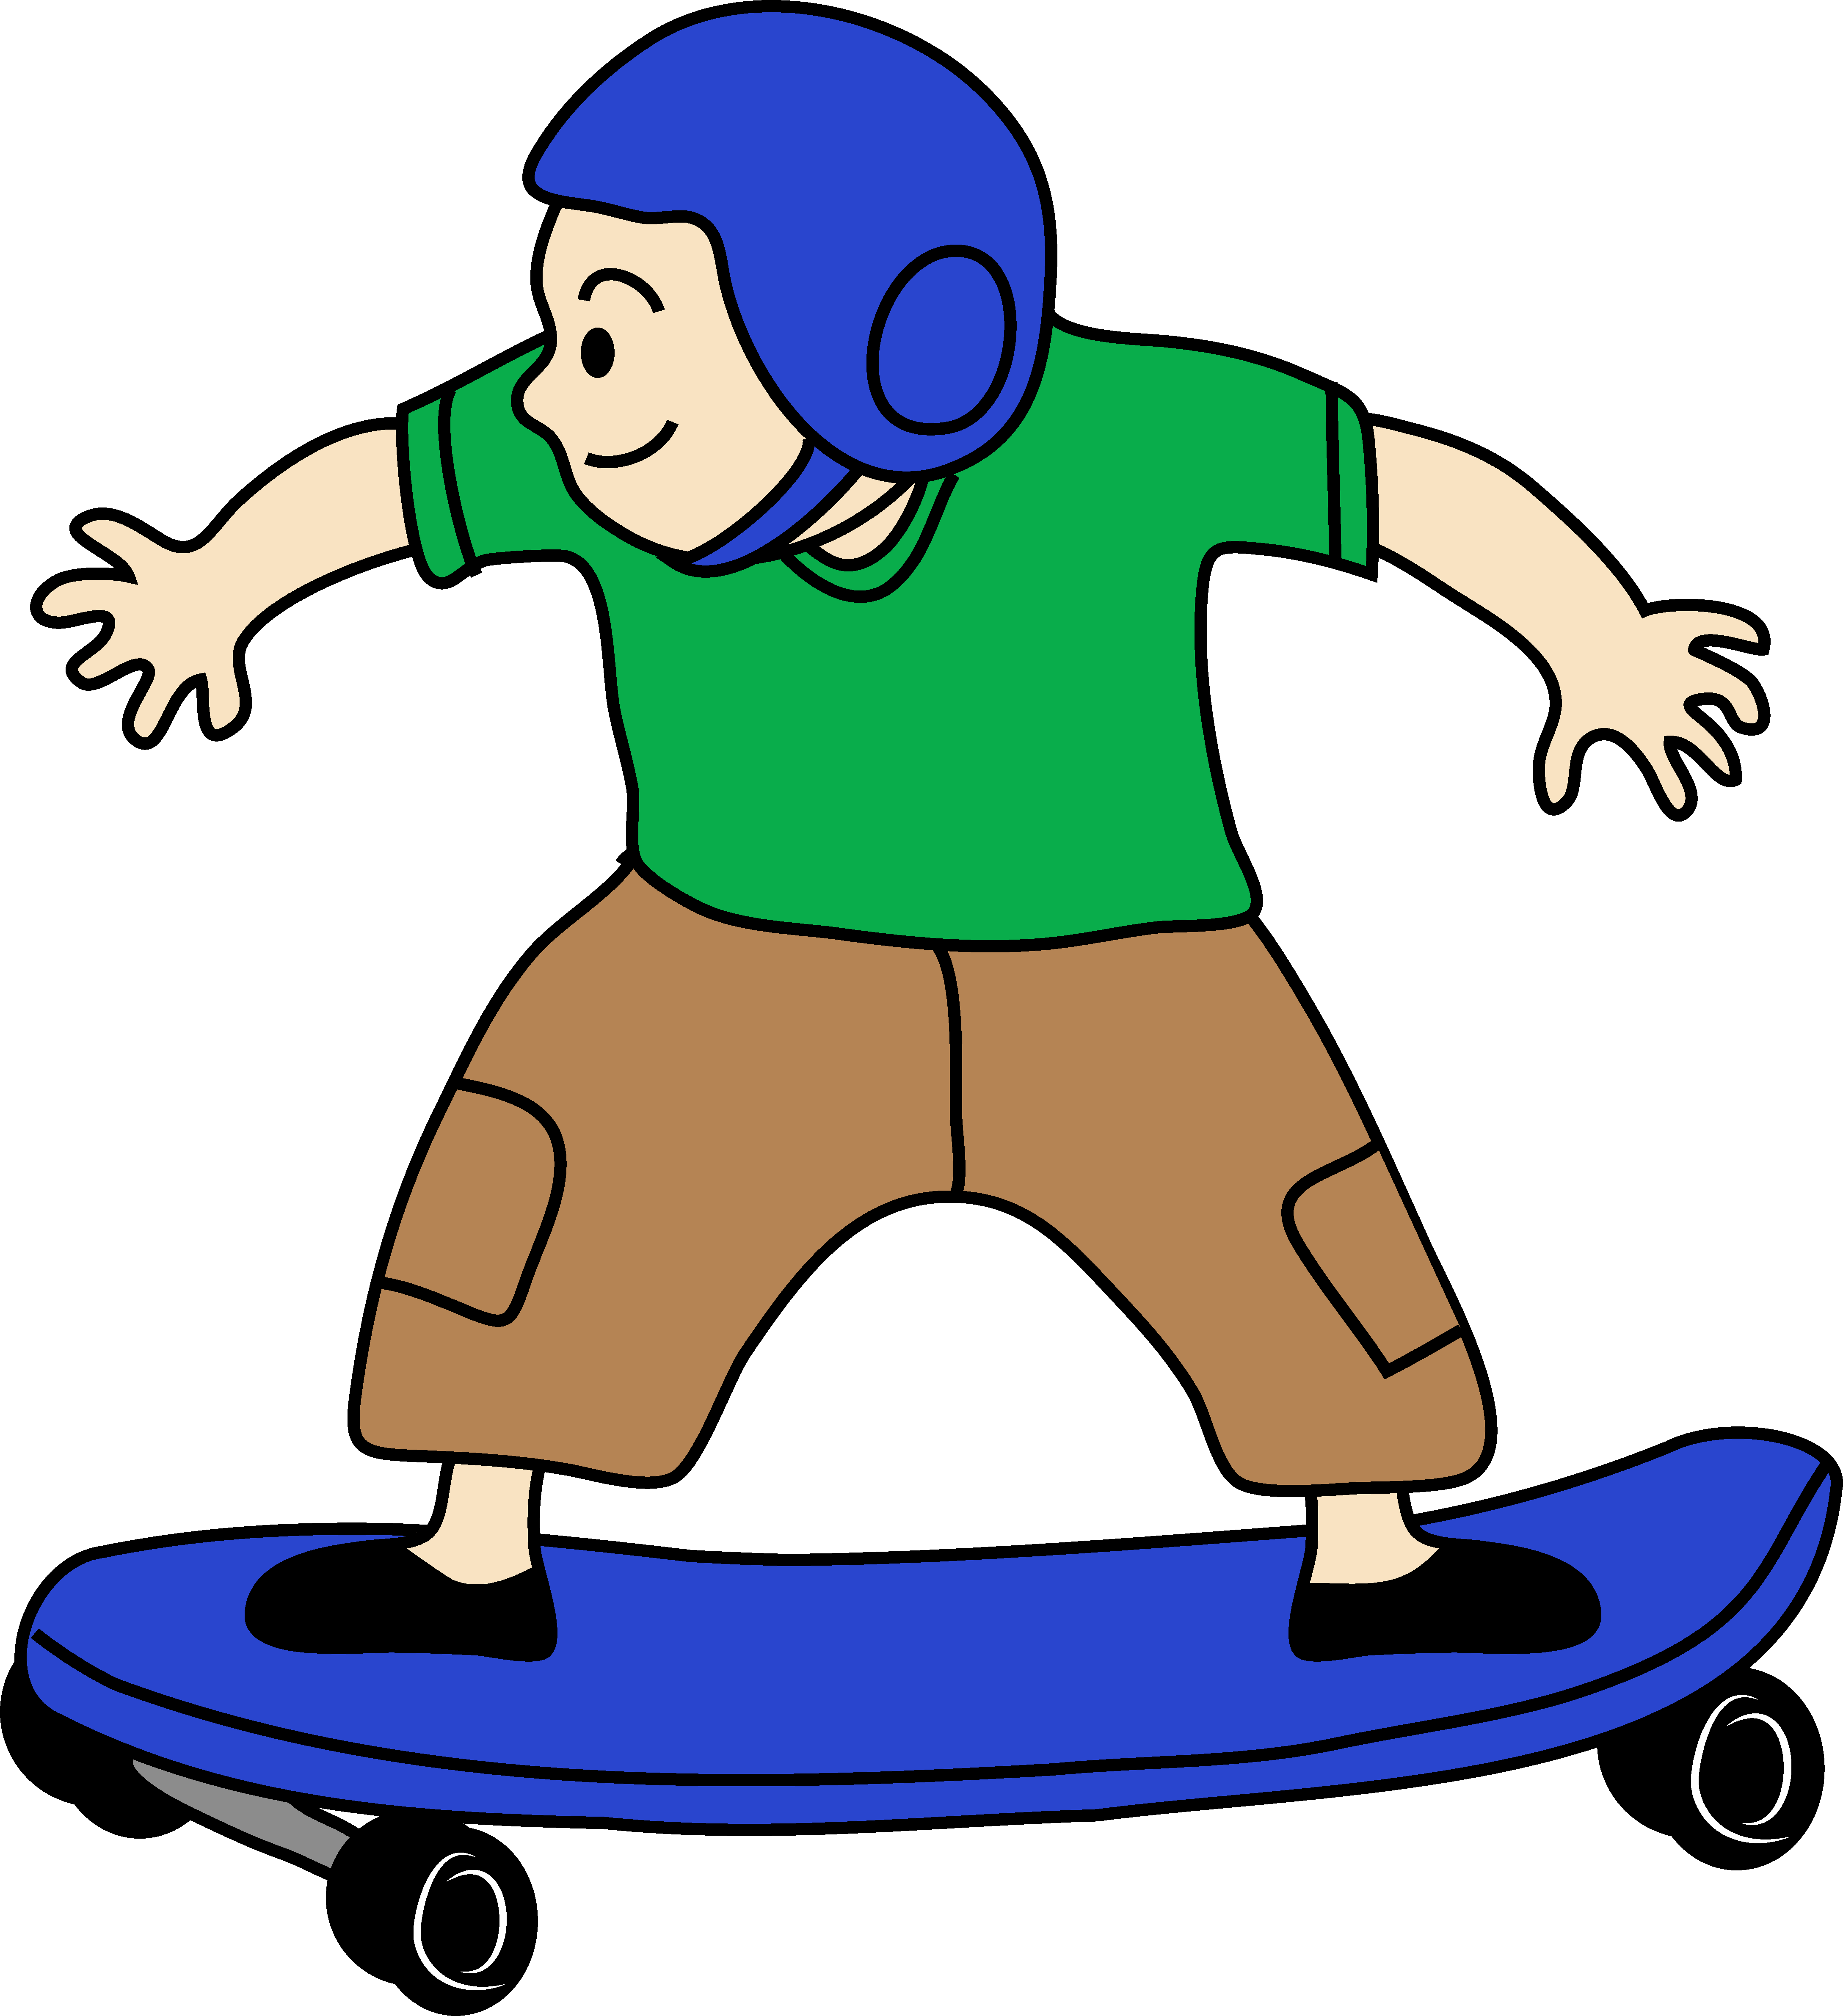 Skateboard skate clipart imag